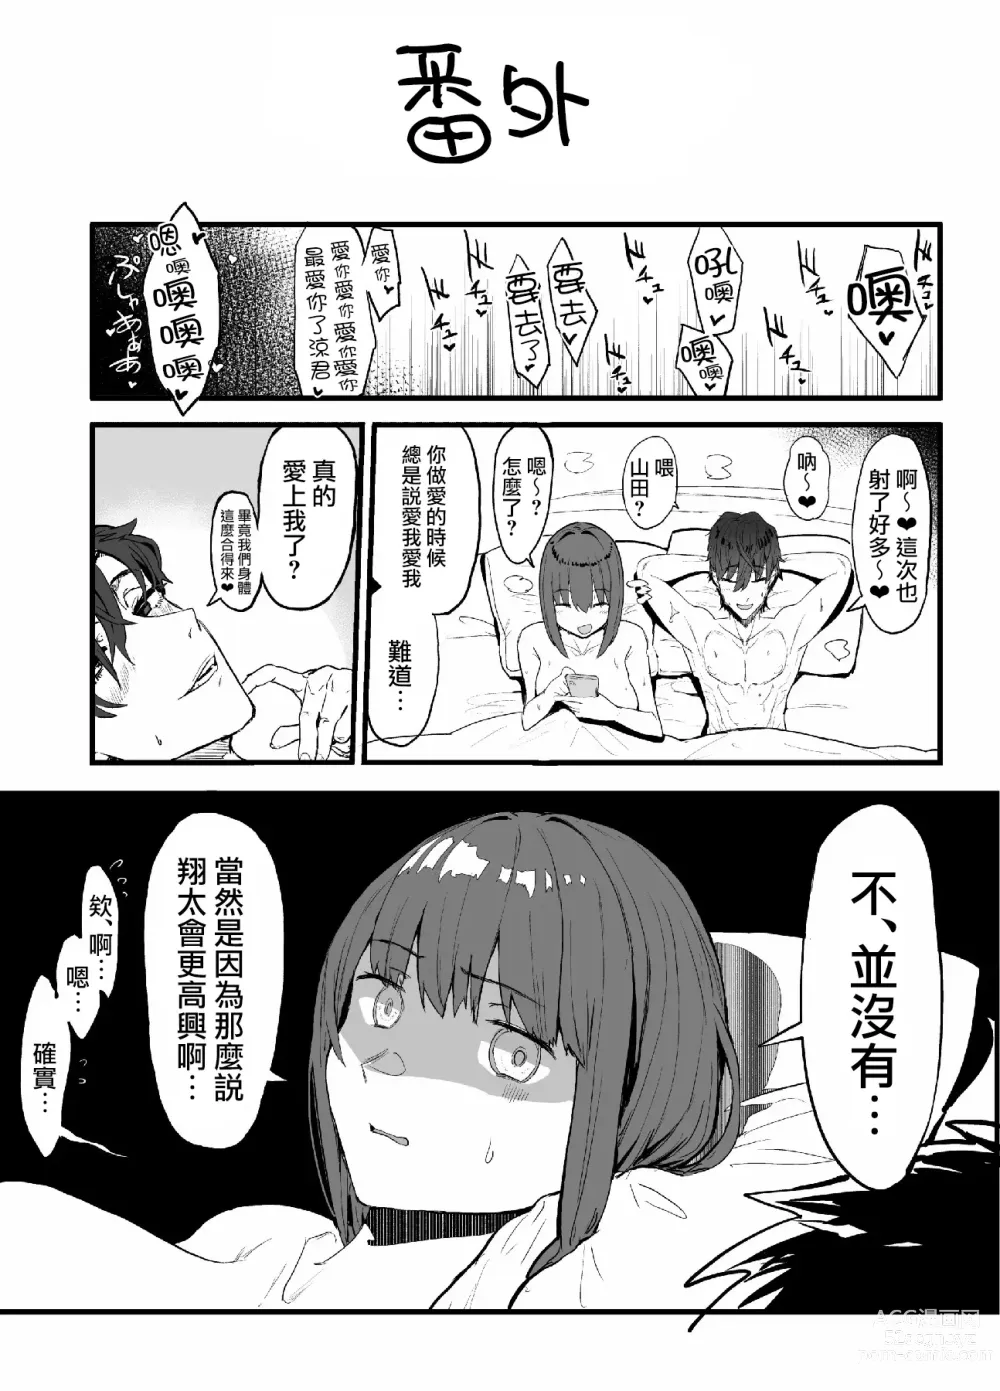 Page 71 of doujinshi ネトラセクラブ